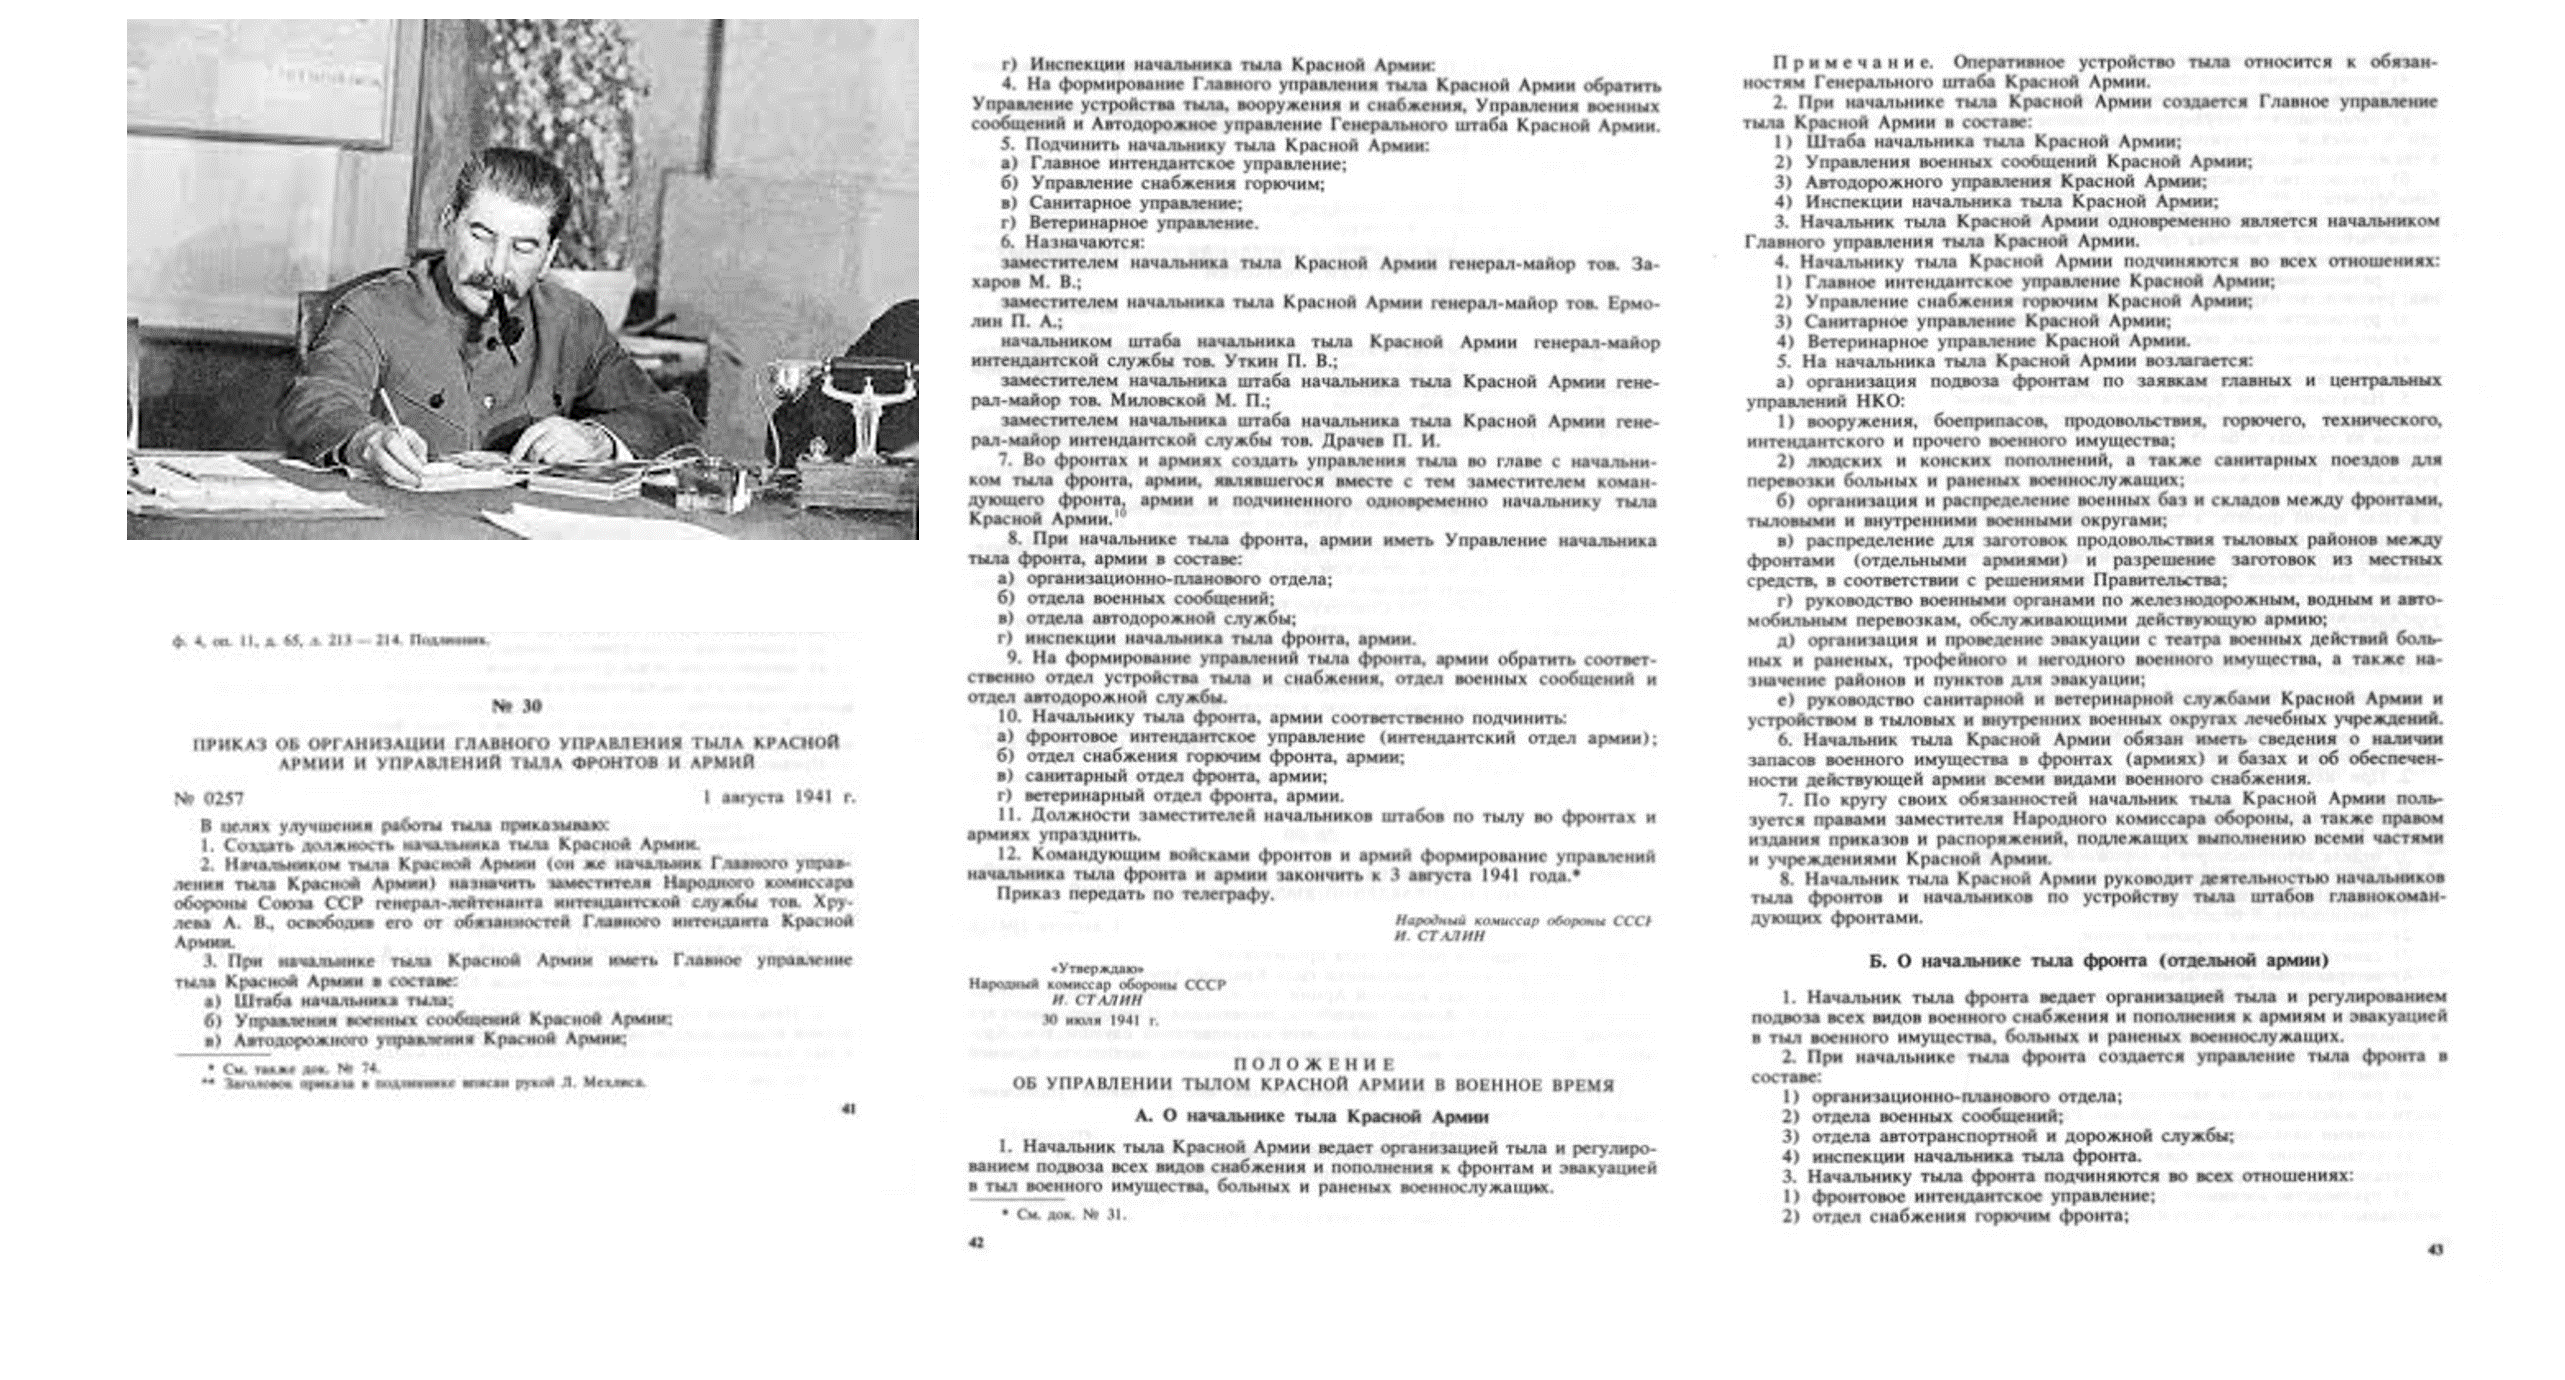 Приказ об организации главного управления тыла Красной Армии от 1 августа 1941 г.